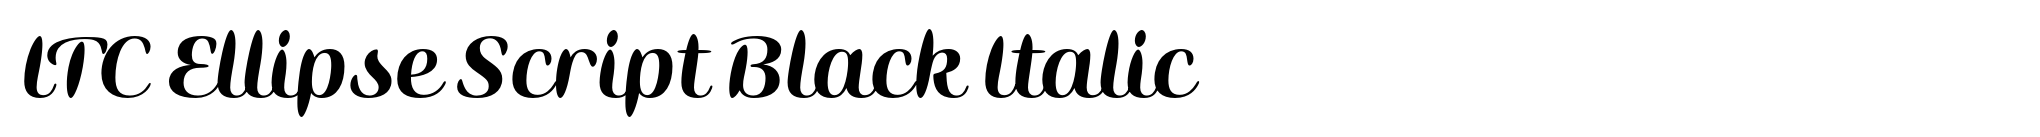 ITC Ellipse Script Black Italic image